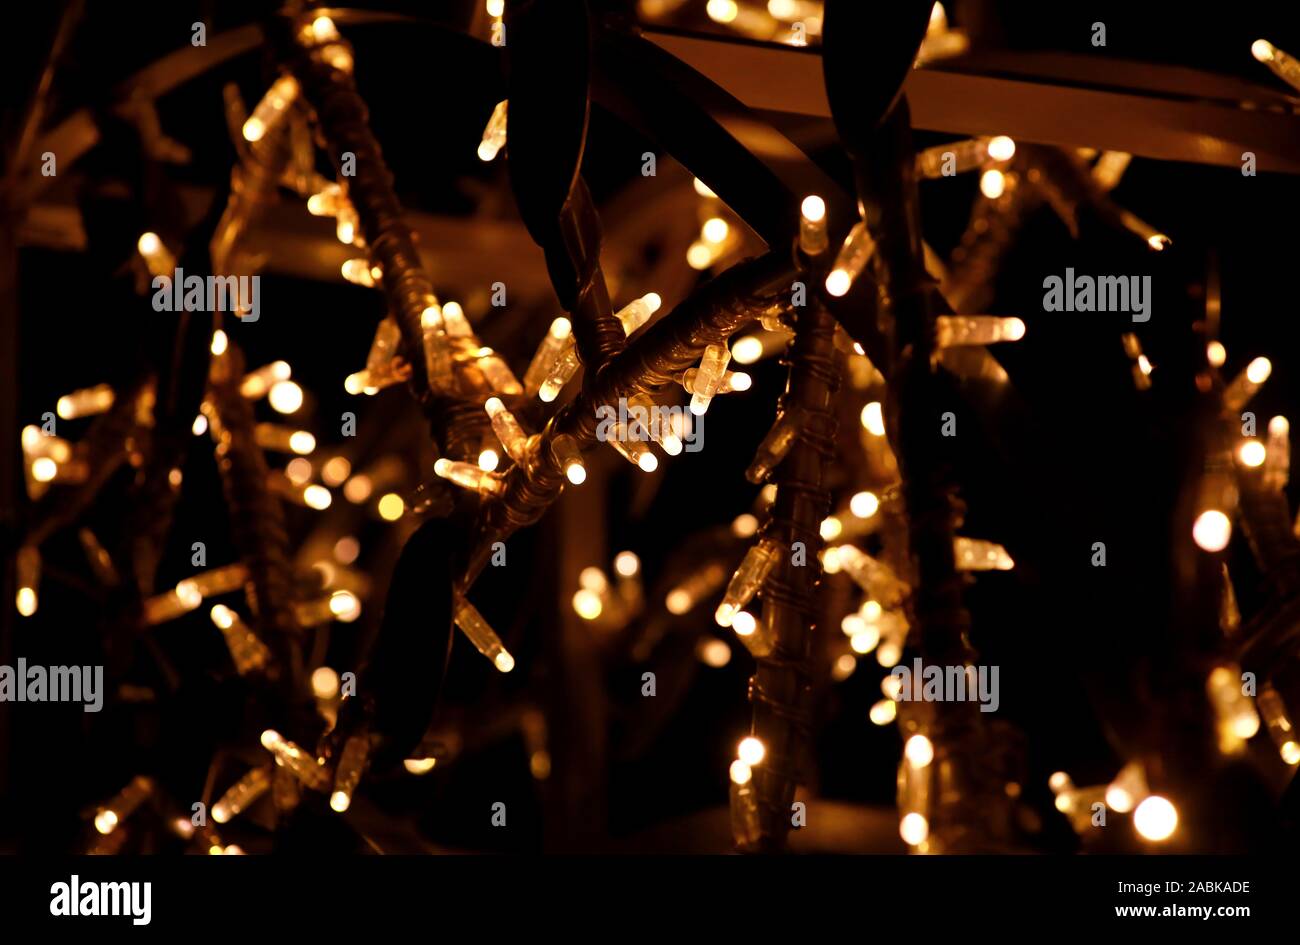 Teil von Weihnachten dekorative gelbe, goldene, weiße Blinkleuchten, hautnah. Detail des Neuen Jahres und Weihnachtsschmuck, string Reis Glühlampen. Stockfoto